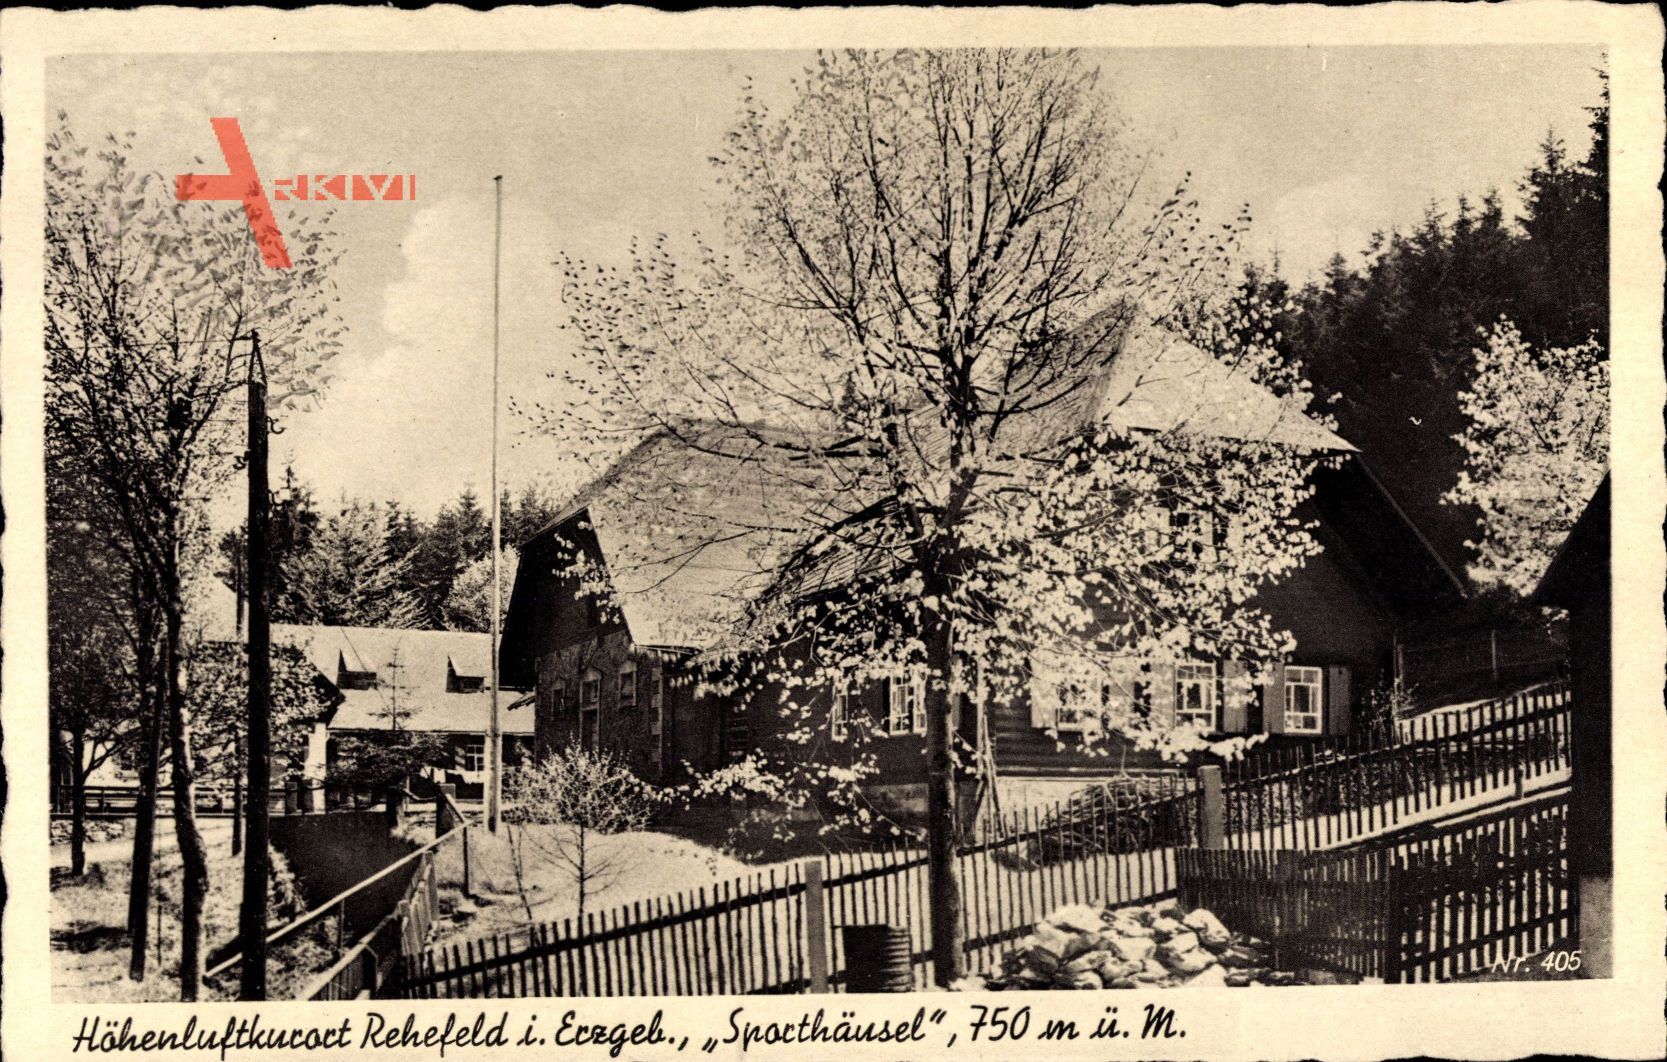 Rehefeld Zaunhaus Altenberg Erzgebirge, Sporthäusl, Frühling